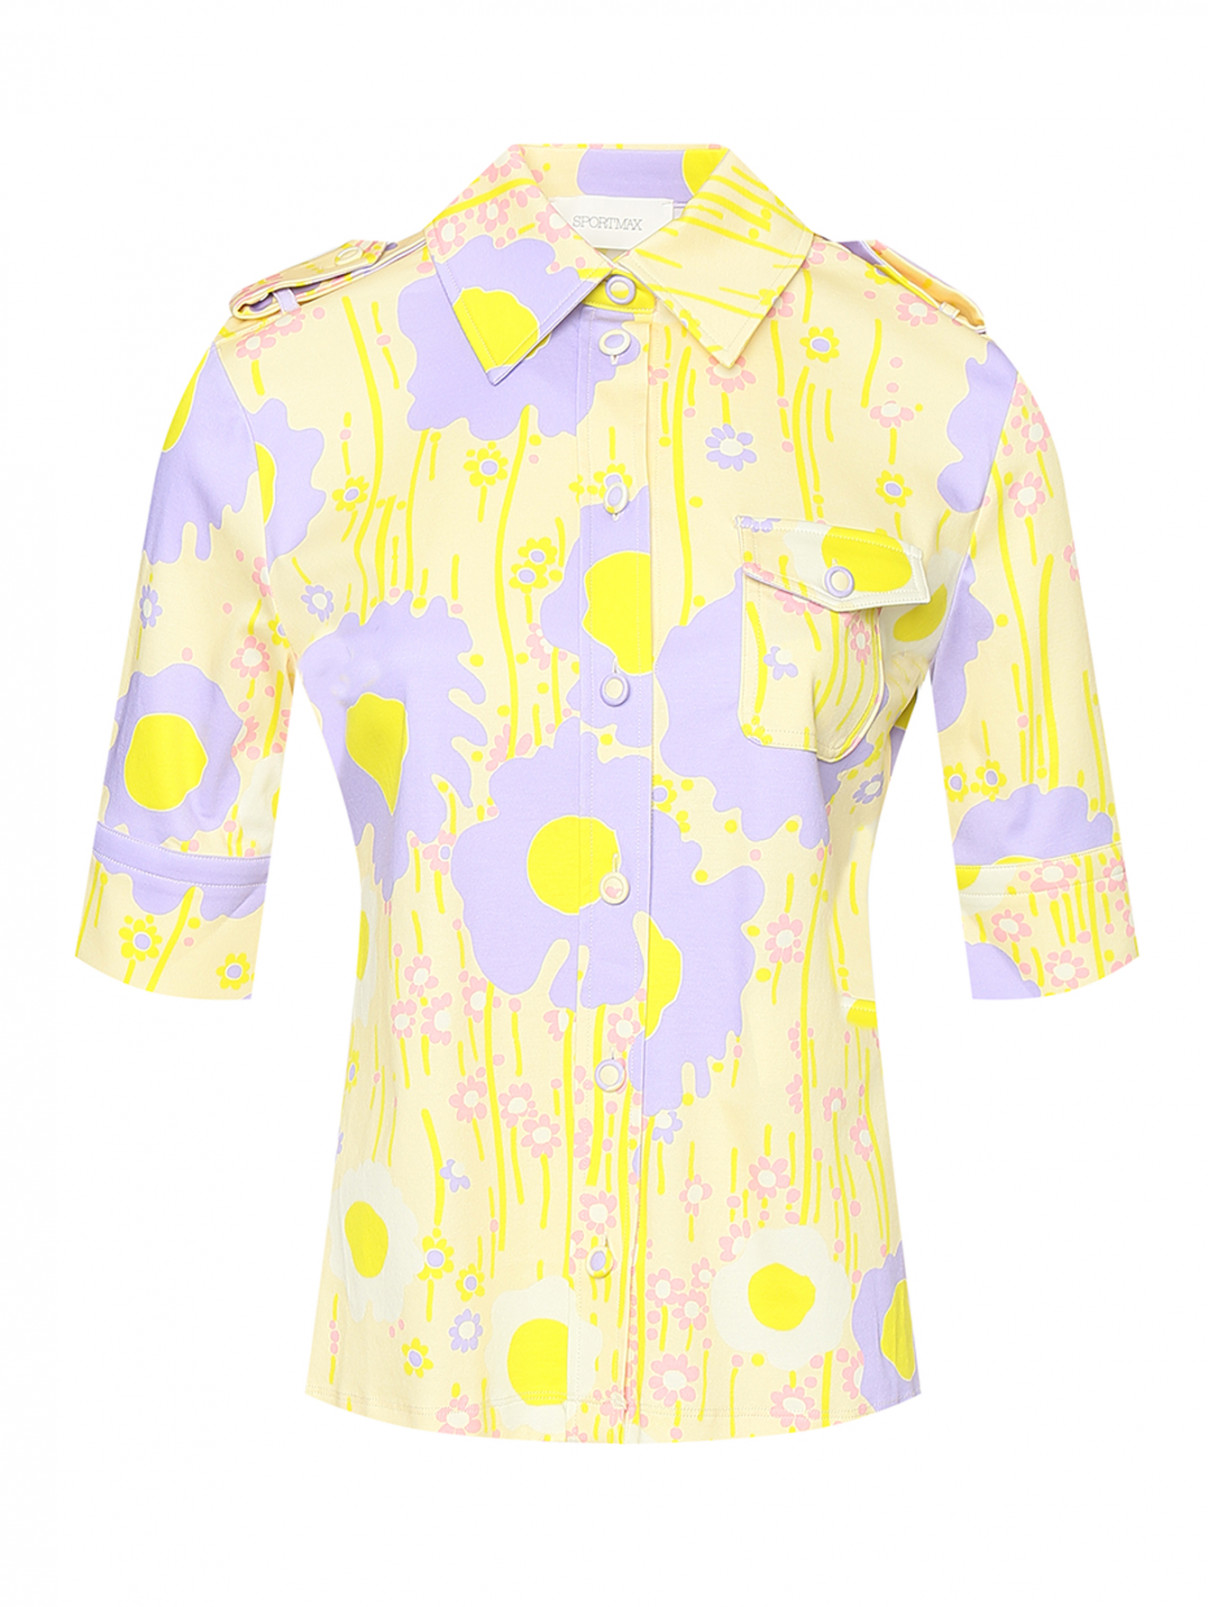 Трикотажная блуза с узором "Цветы" Sportmax  –  Общий вид  – Цвет:  Желтый